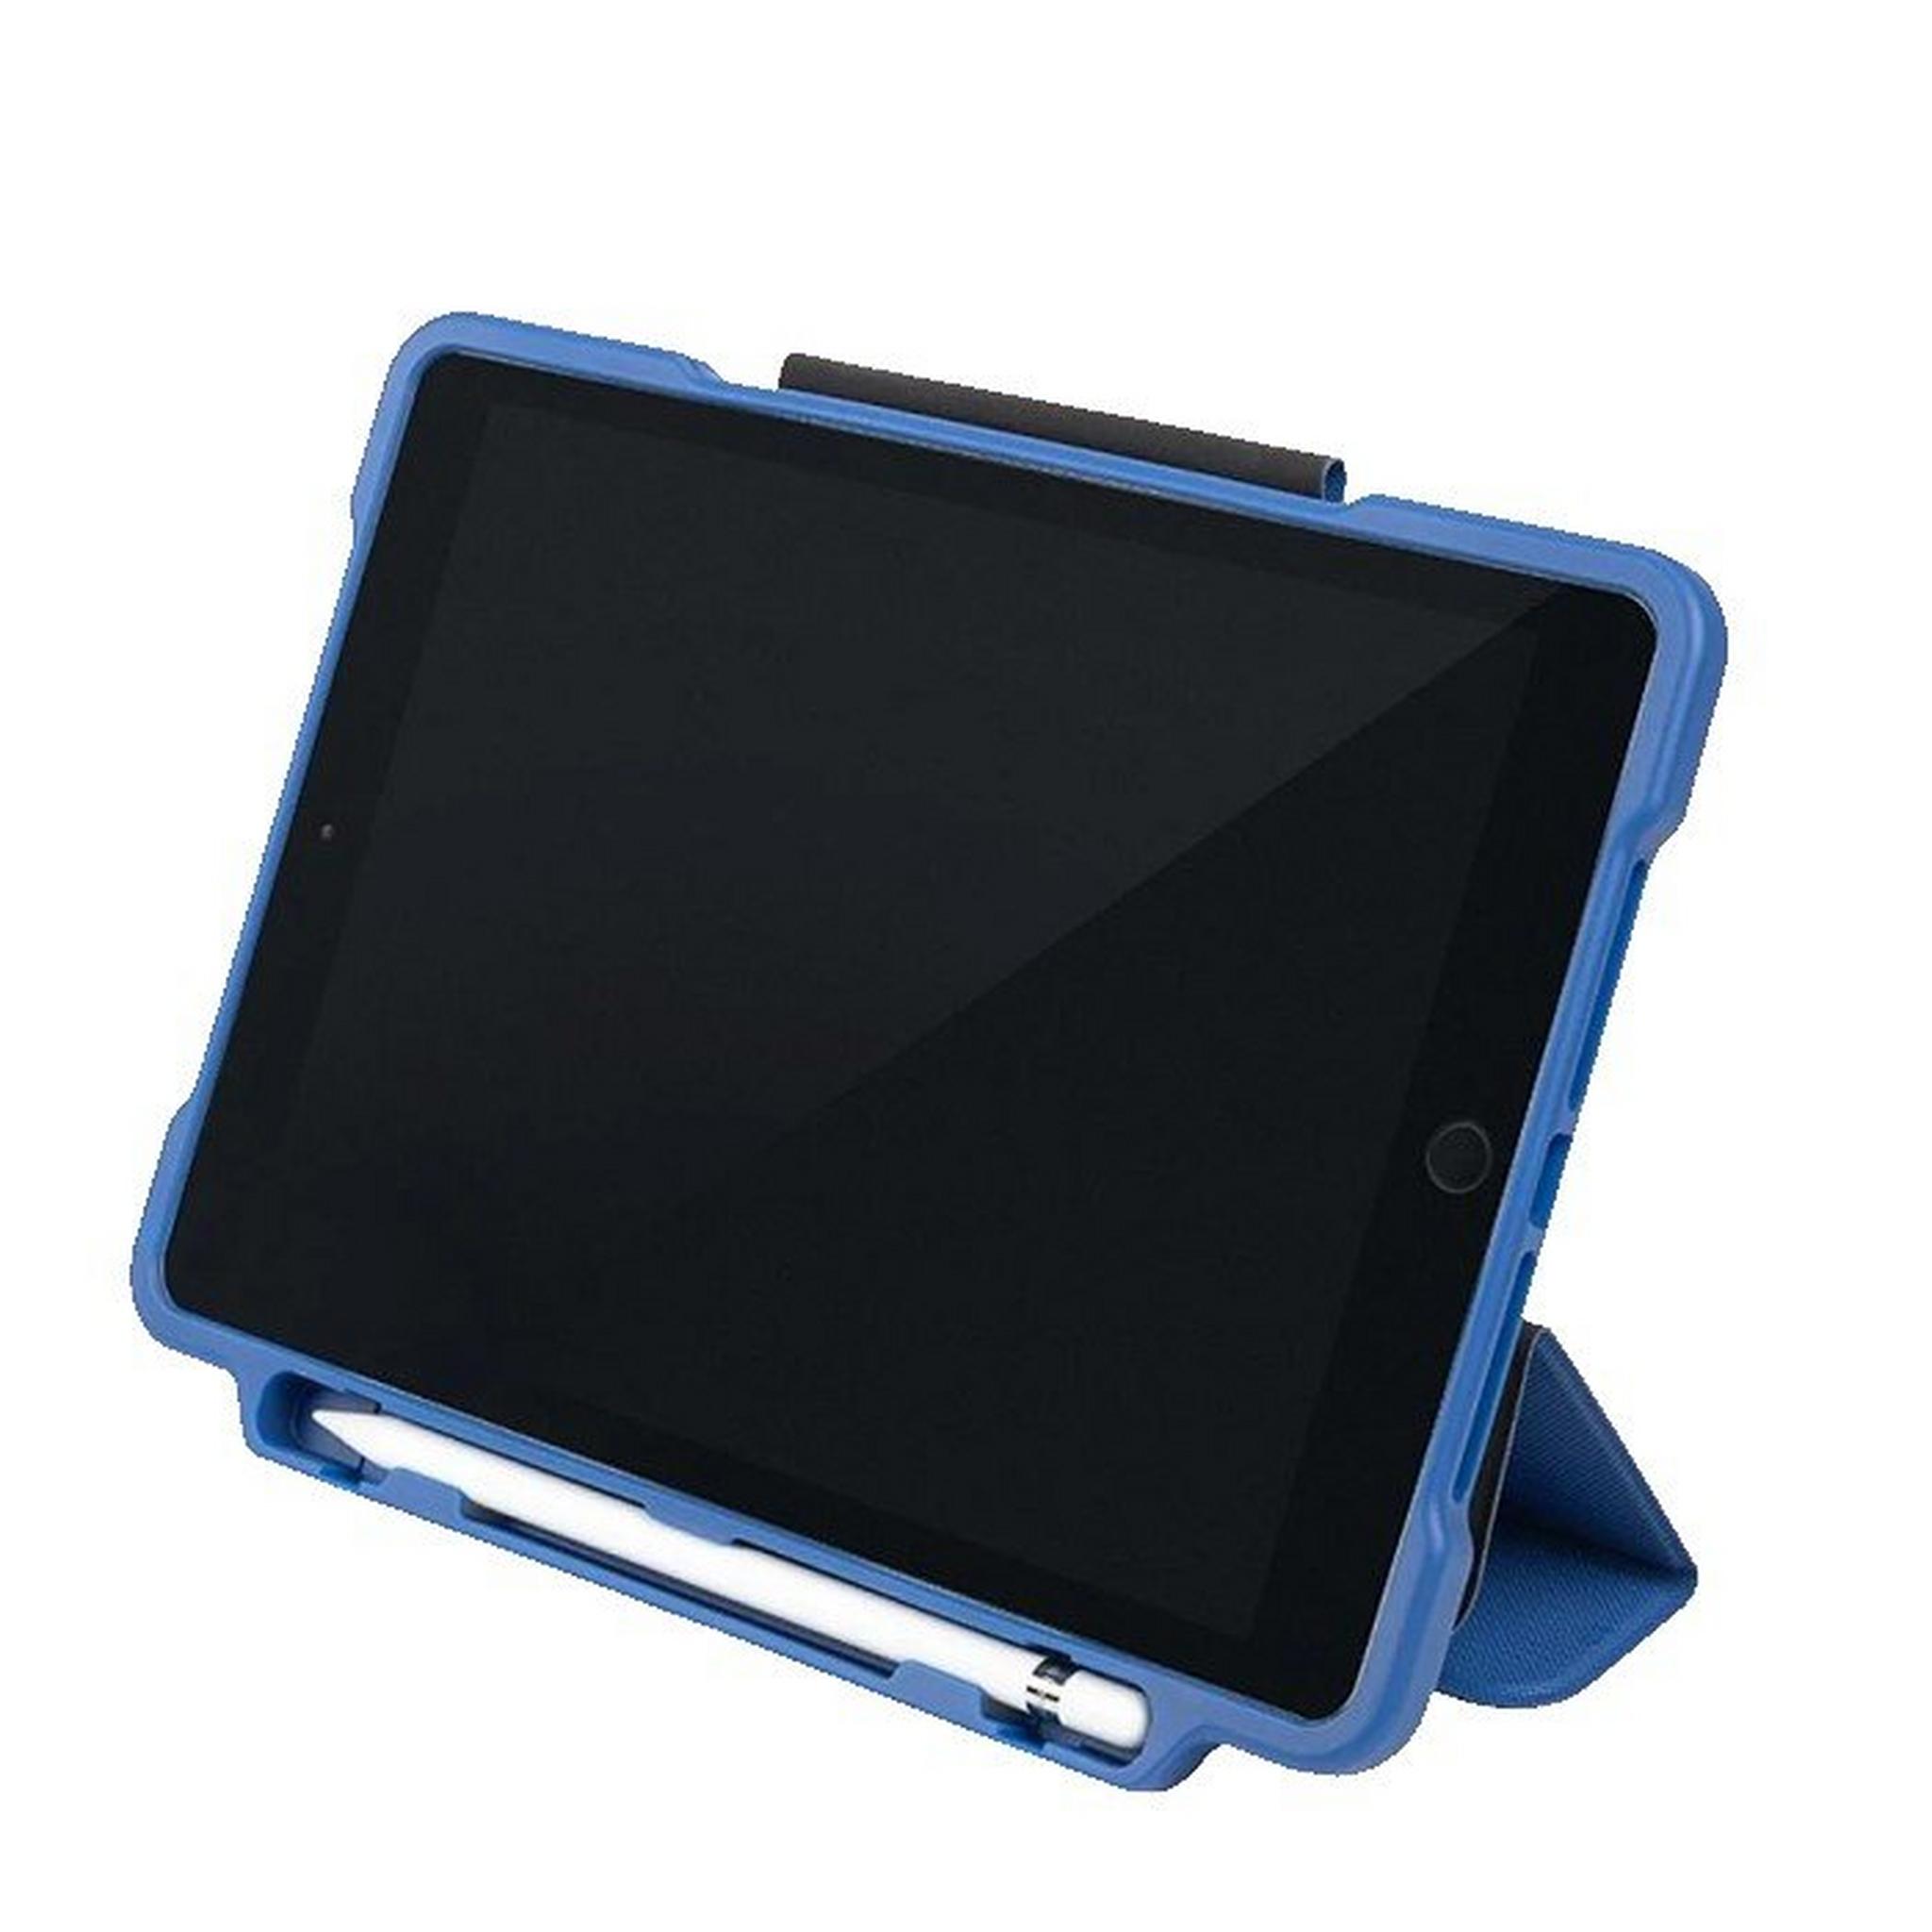 Tucano Alunno Folio Case for iPad 10,2-inch, IPD10221AL-B – Blue